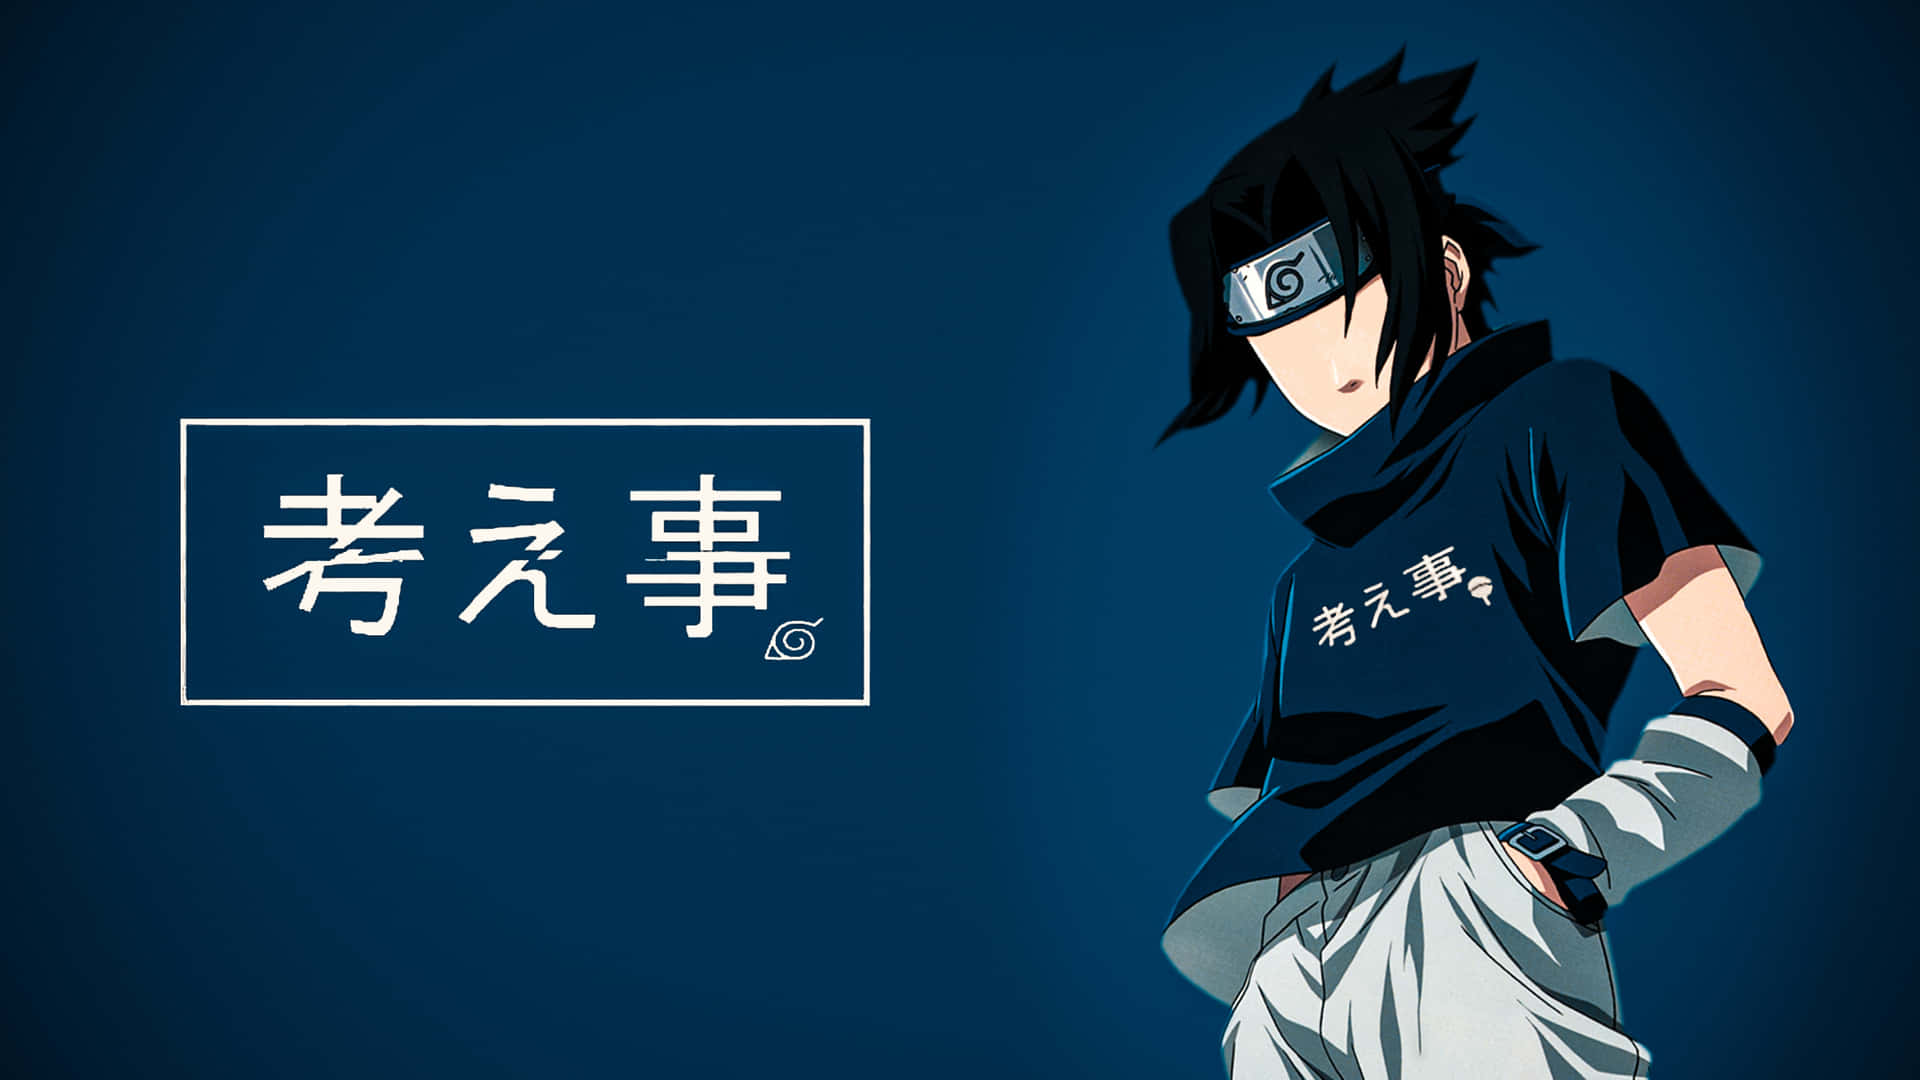 Unaversión Azul De Sasuke, El Héroe De La Serie De Anime Naruto. Fondo de pantalla